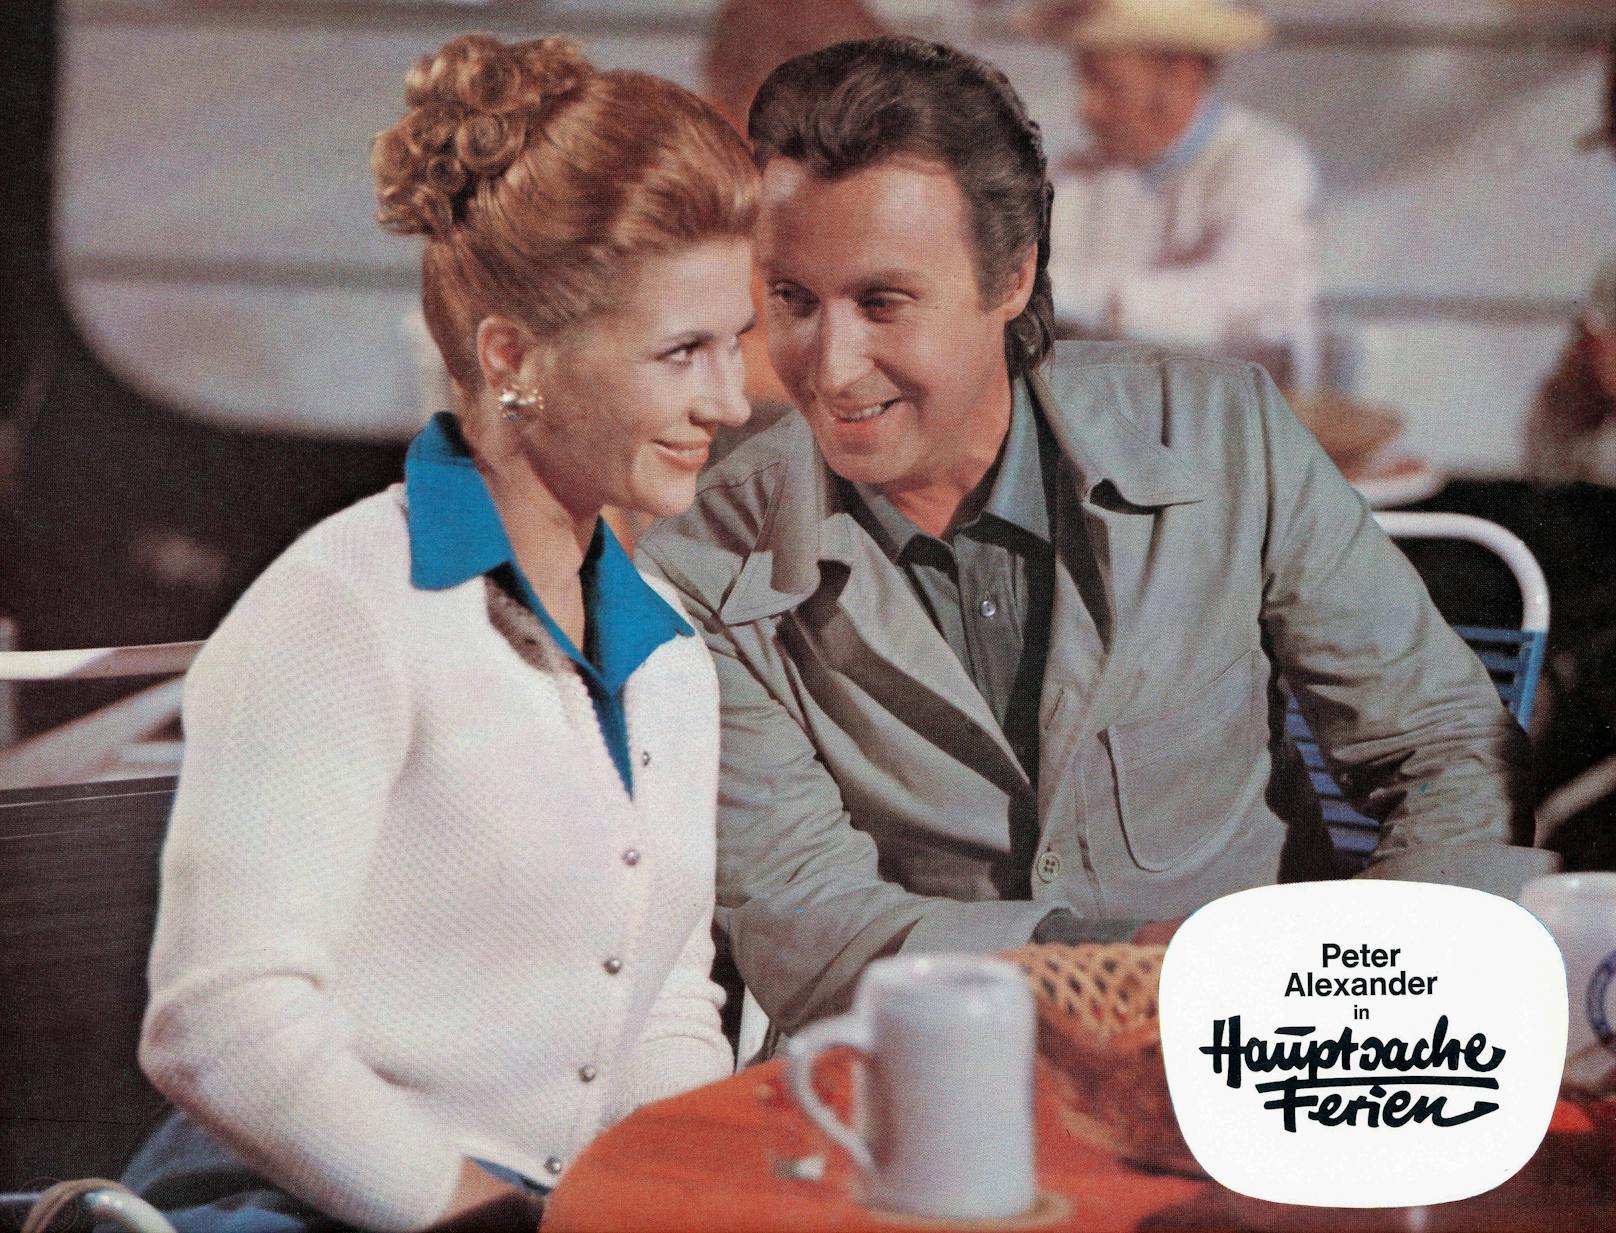 Die Schauspielerin und Peter Alexander in "Hauptsache Ferien" 1972. Regie führte Peter Weck.